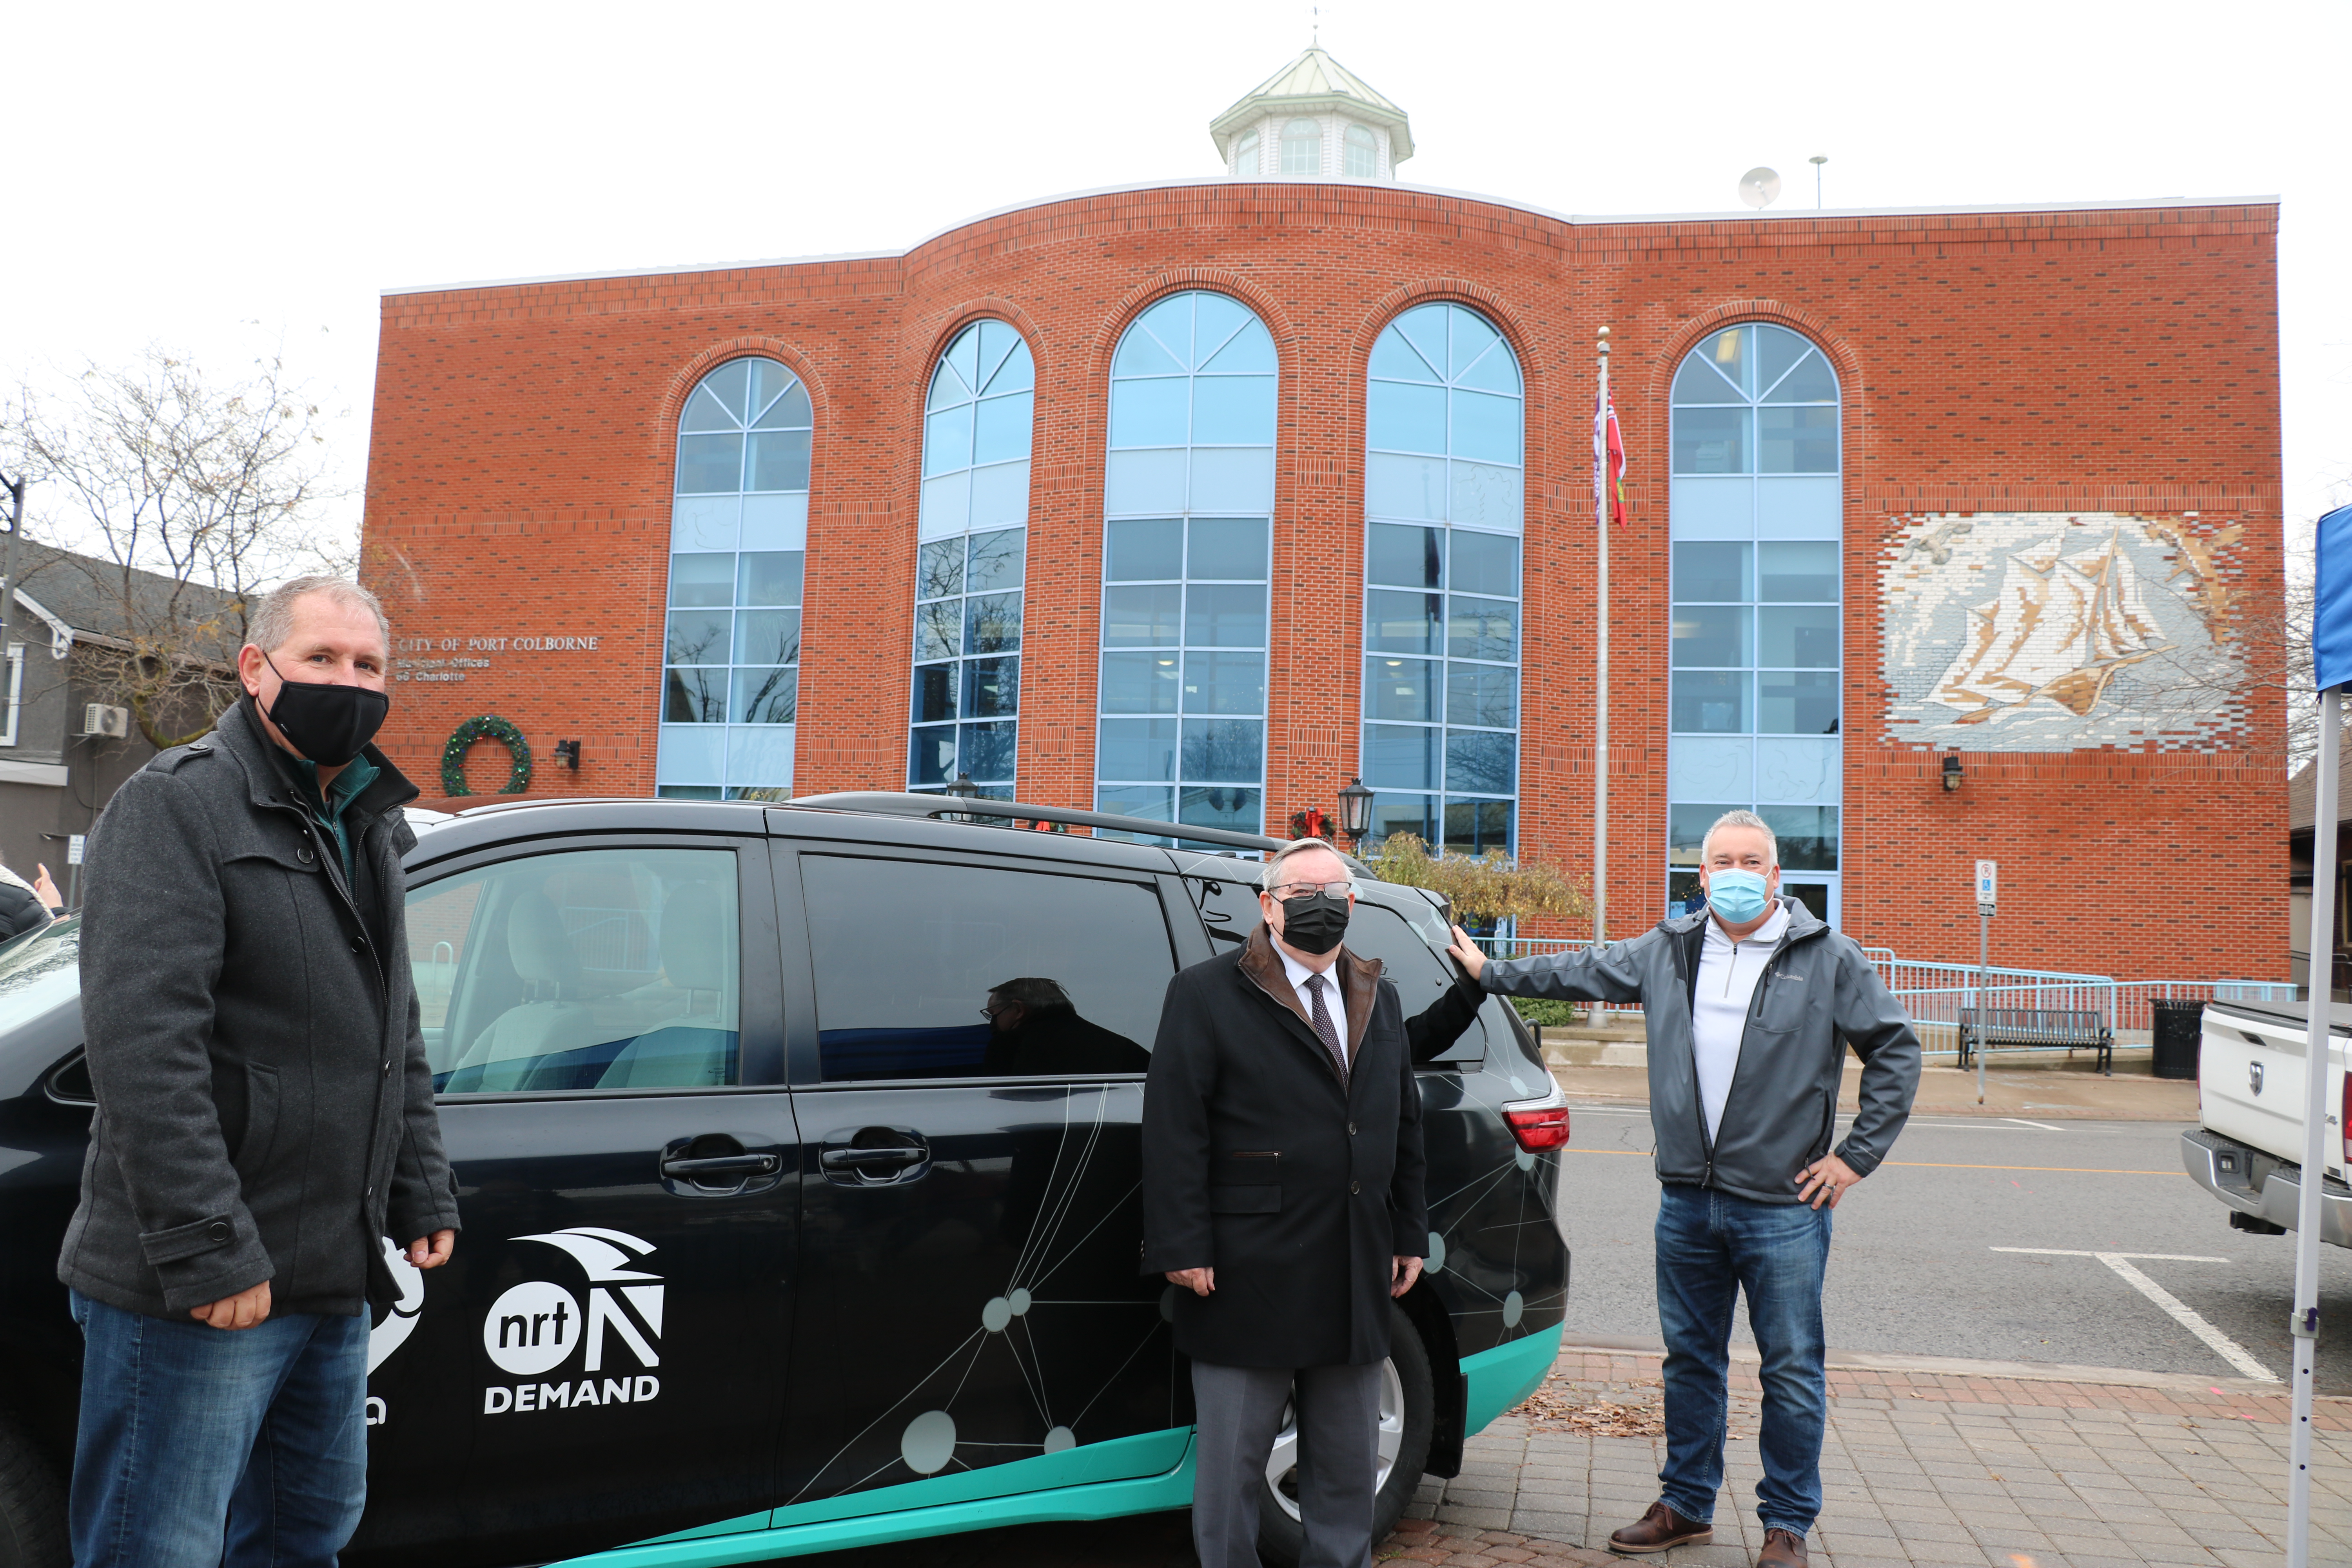 Mayor, Regional Chair, and CAO standing in front of van